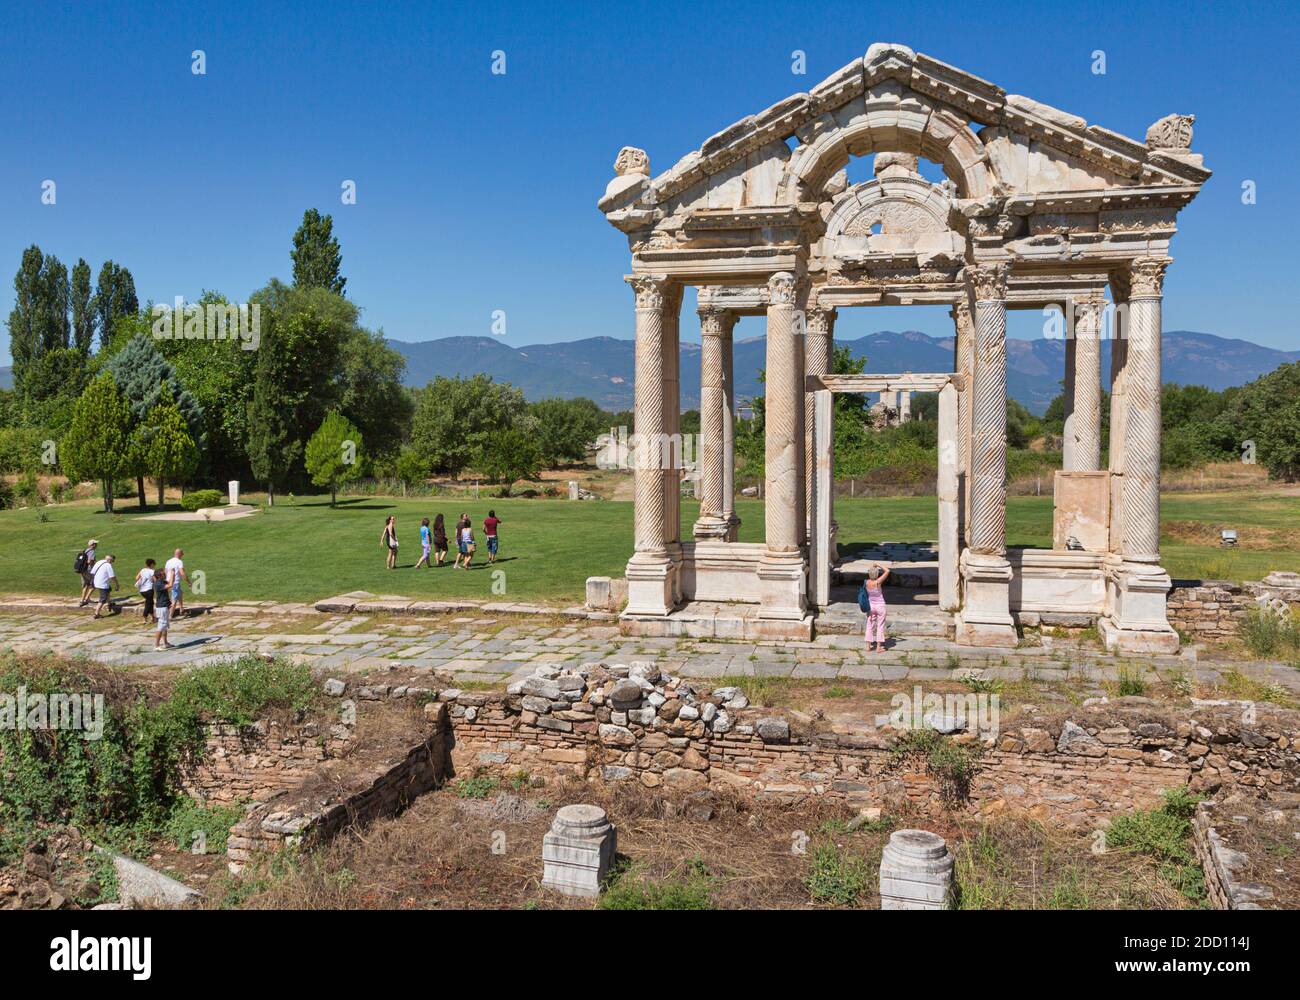 Ruinen von Aphrodisias, Provinz Aydin, Türkei. 2. Jahrhundert Tor als Tetrapylon bekannt. Aphrodisias, die ein UNESCO-Weltkulturerbe ist, wurde d Stockfoto